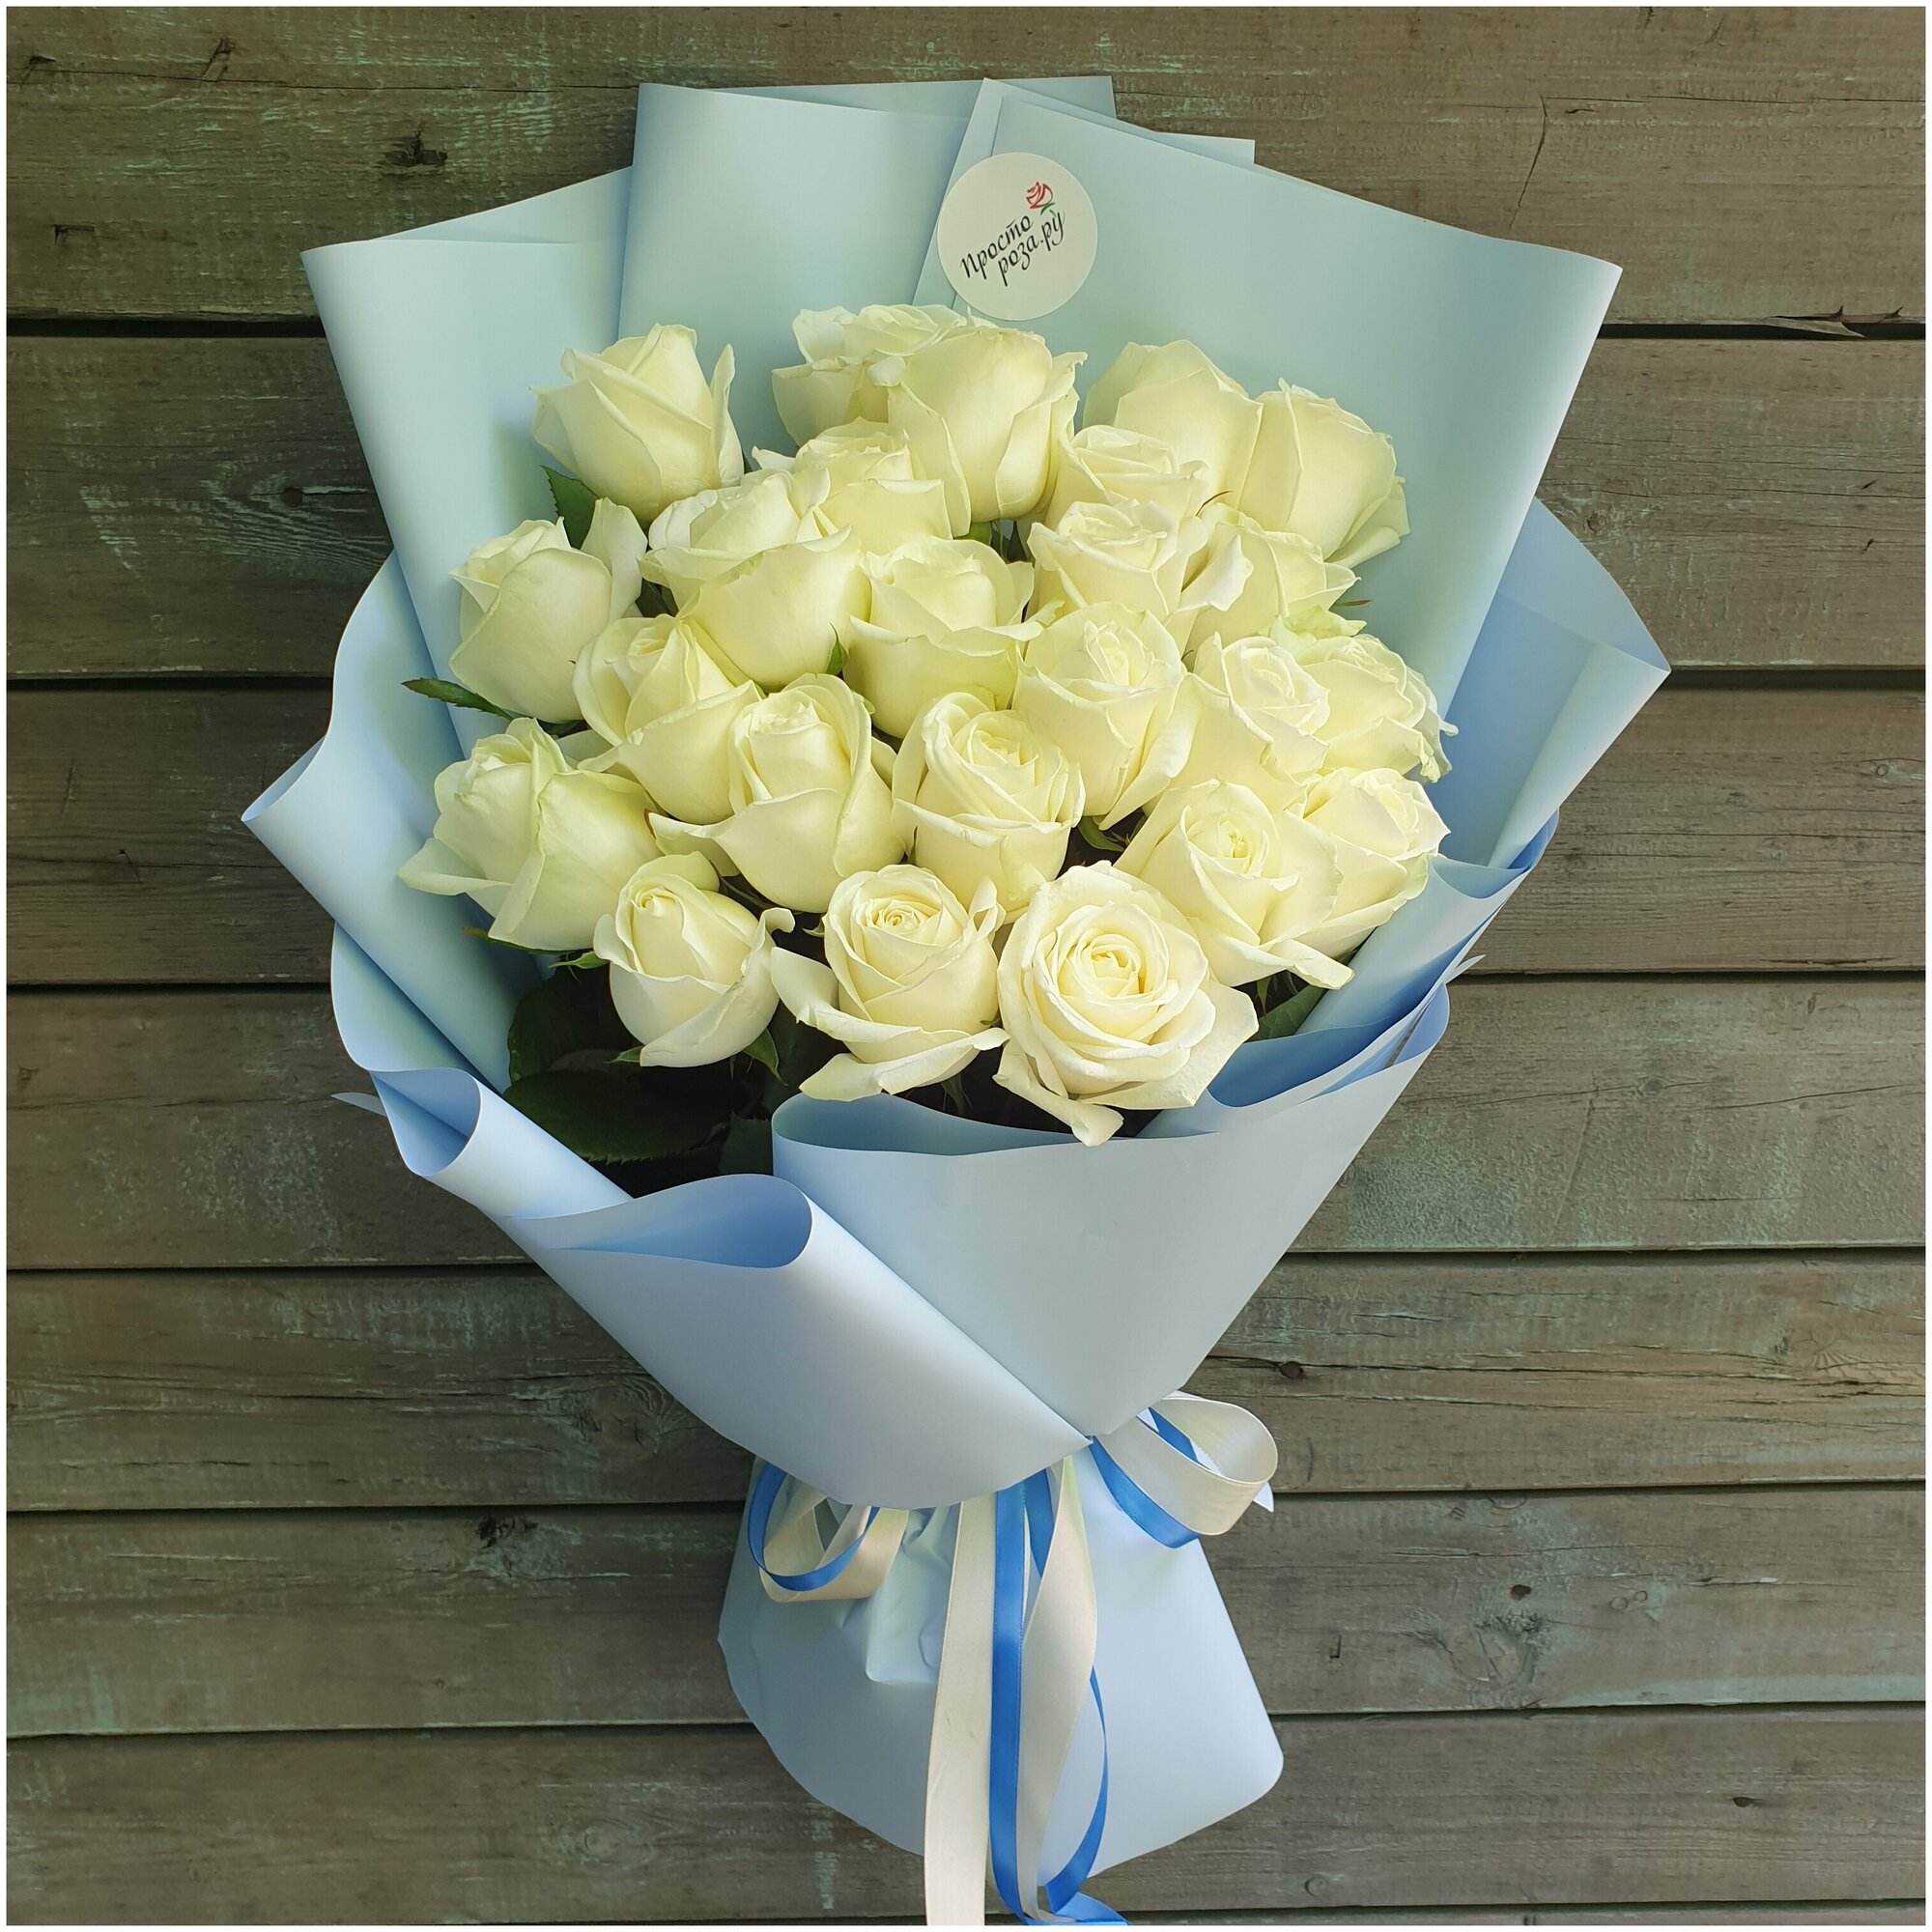 Розы Премиум 25 шт белые высота 50 см в голубой упаковке арт.11586 - Просто роза ру